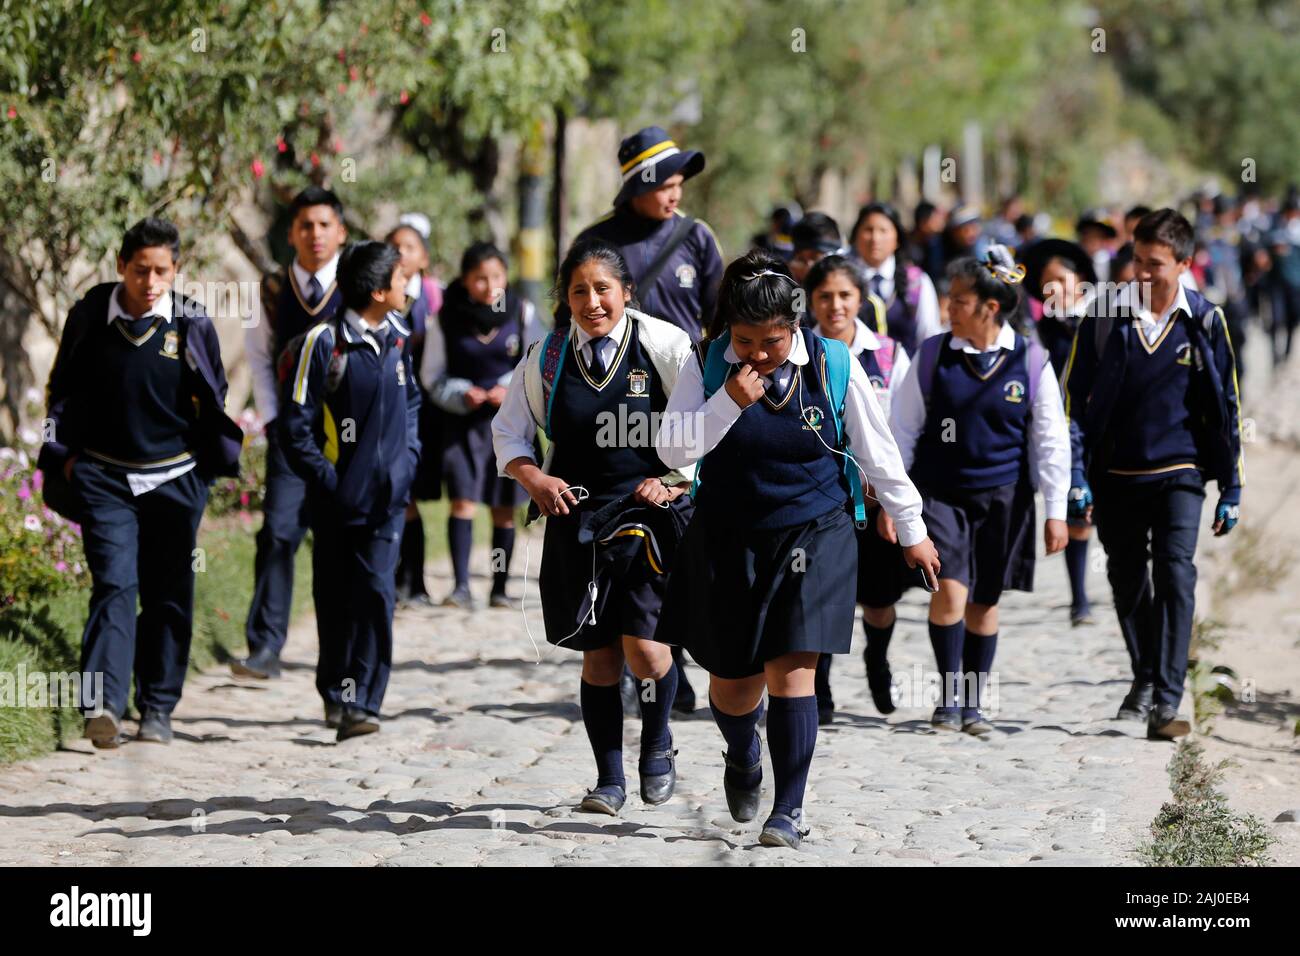 School children in uniform, Peru, Andes region Stock Photo